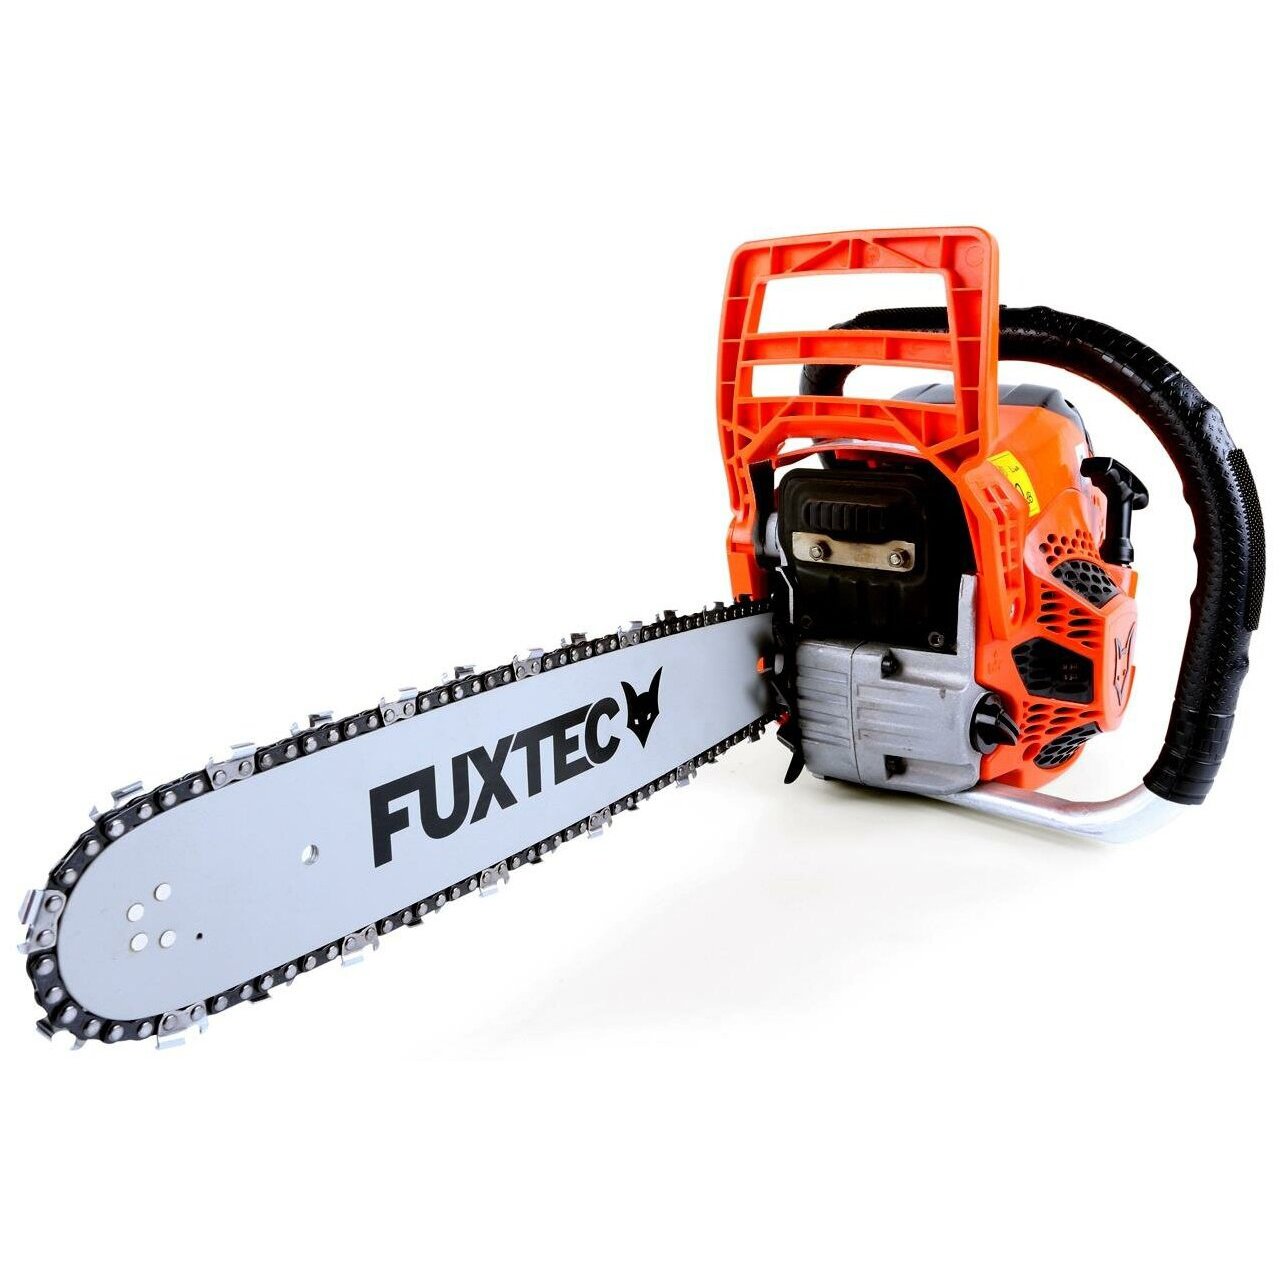 FUXTEC FX-KS146 40 см